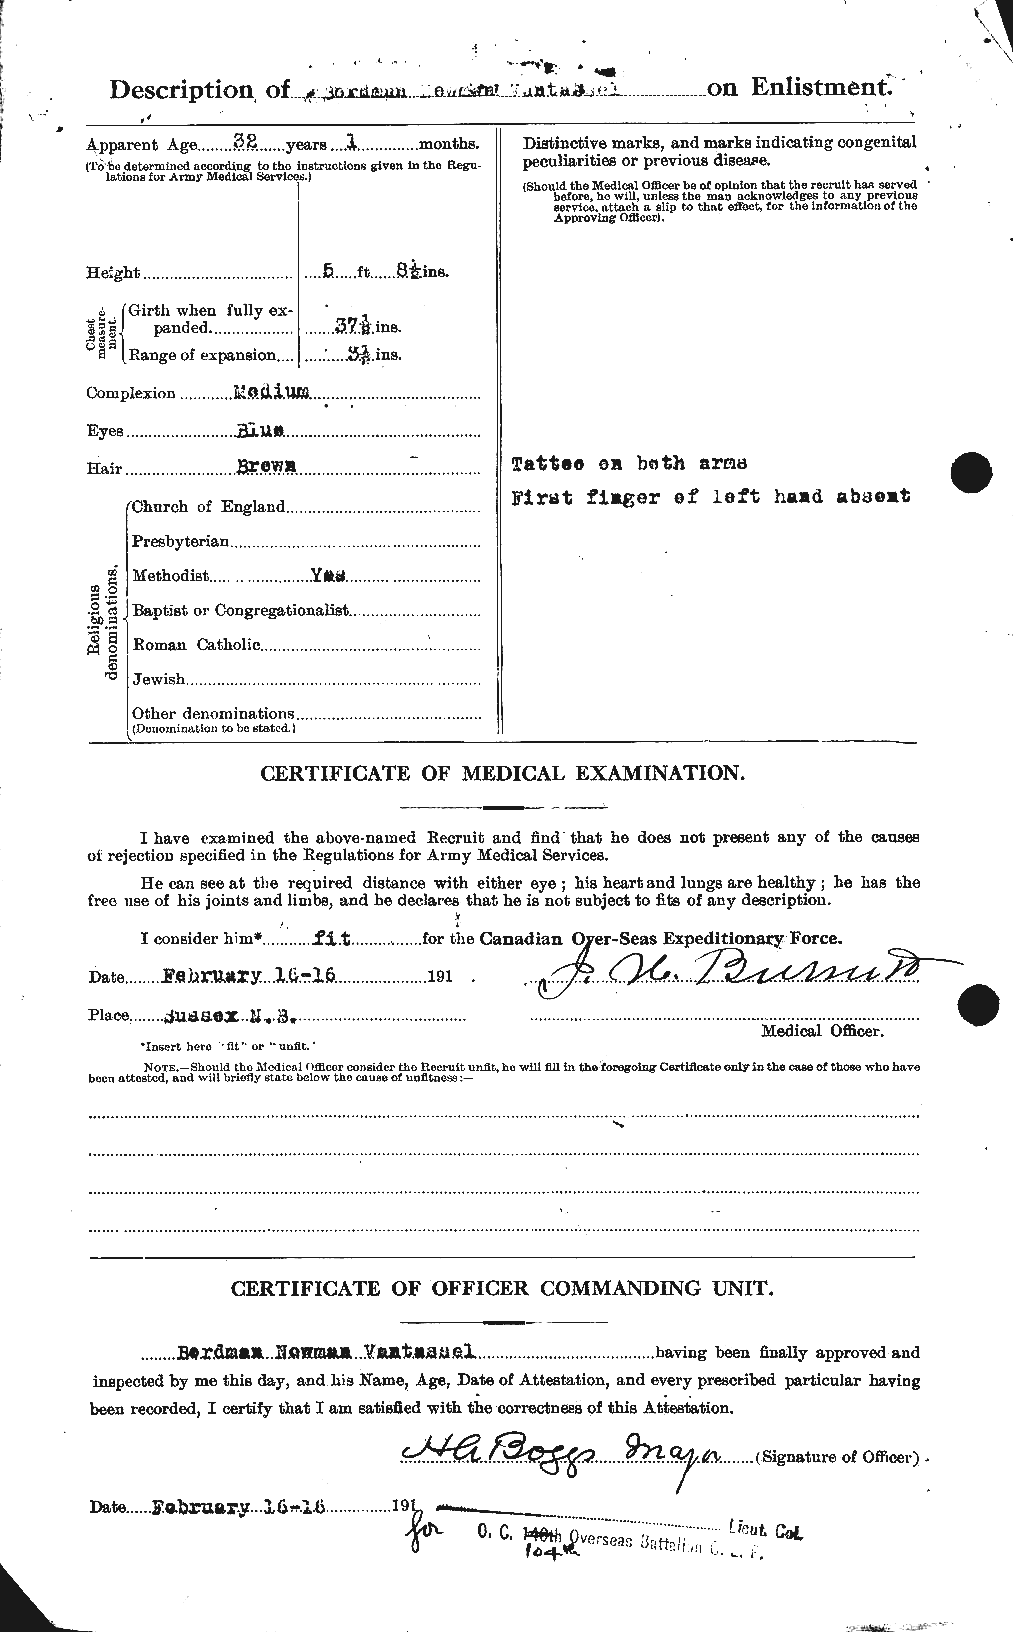 Dossiers du Personnel de la Première Guerre mondiale - CEC 648953b